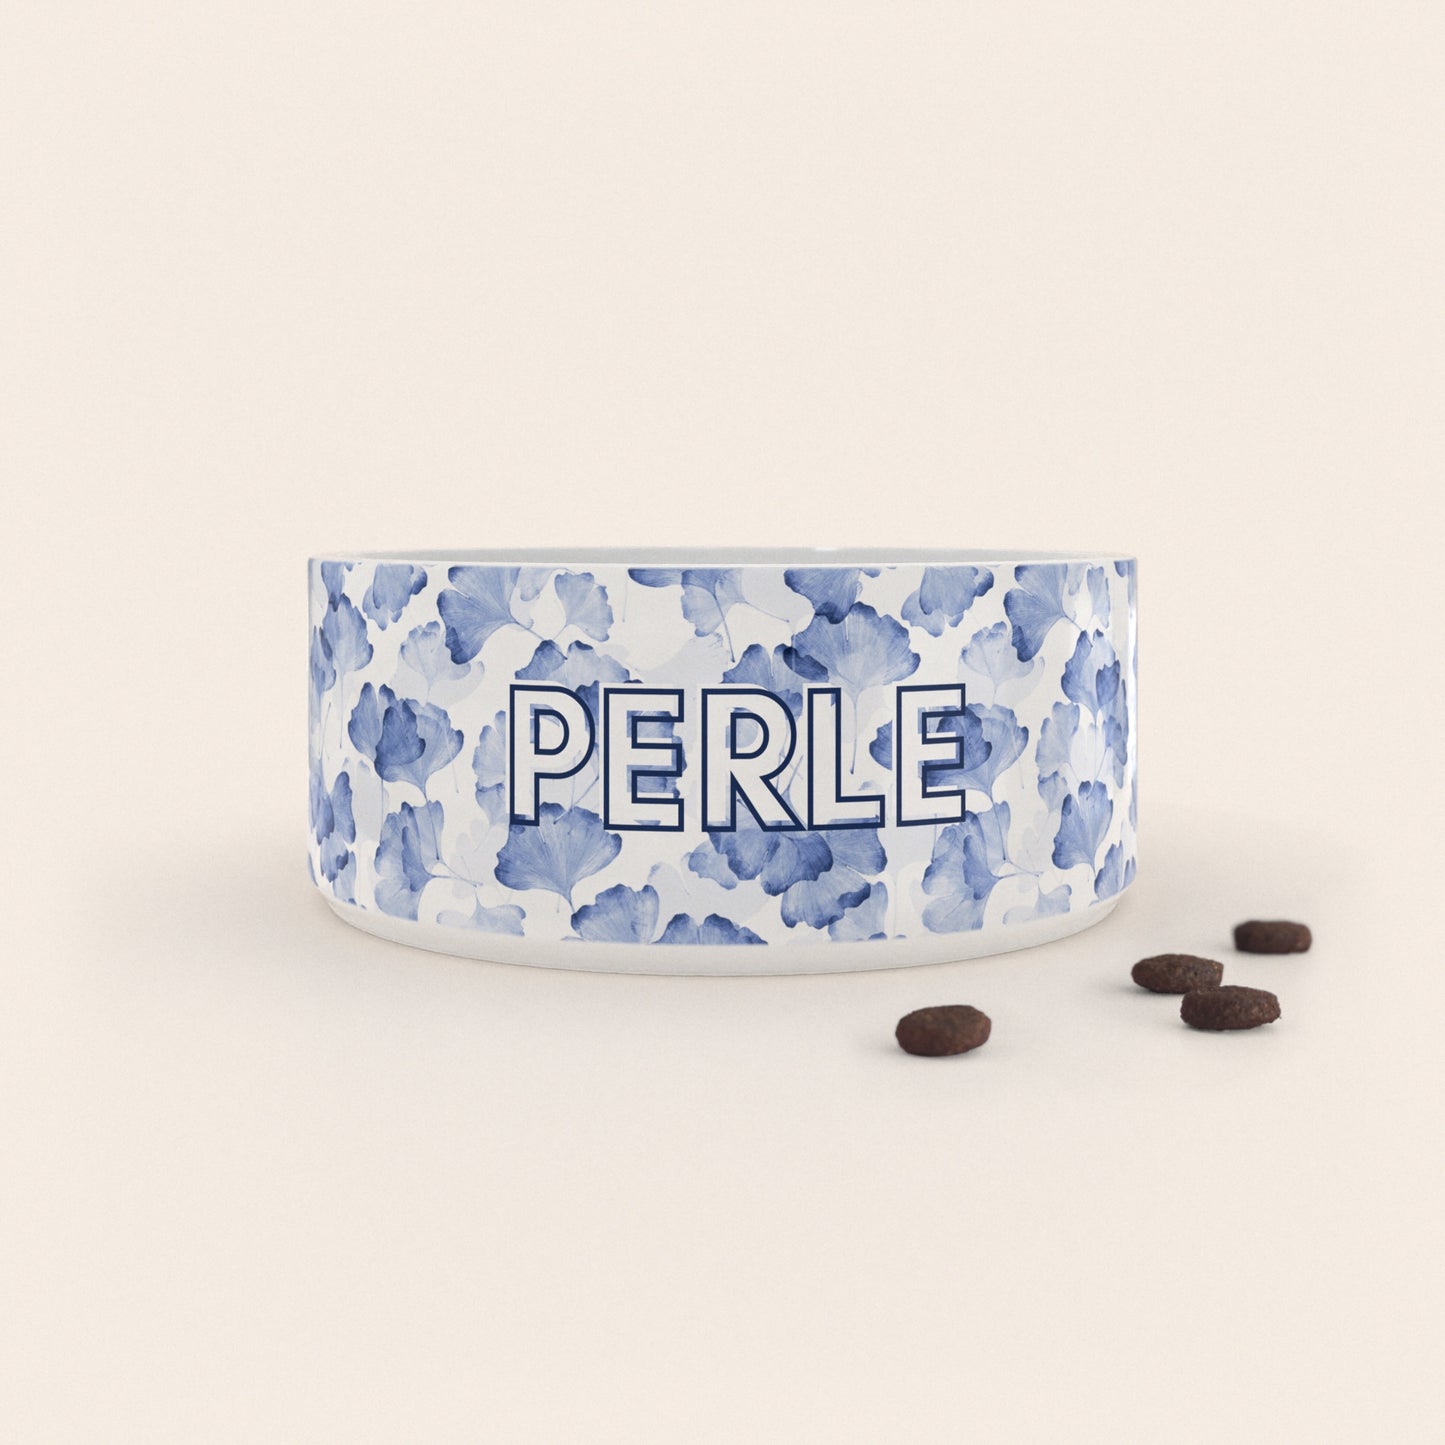 Gamelle pour chien au motif Ginkgo Bleu personnalisés avec le nom Perle, accompagné de croquettes sur fond neutre.